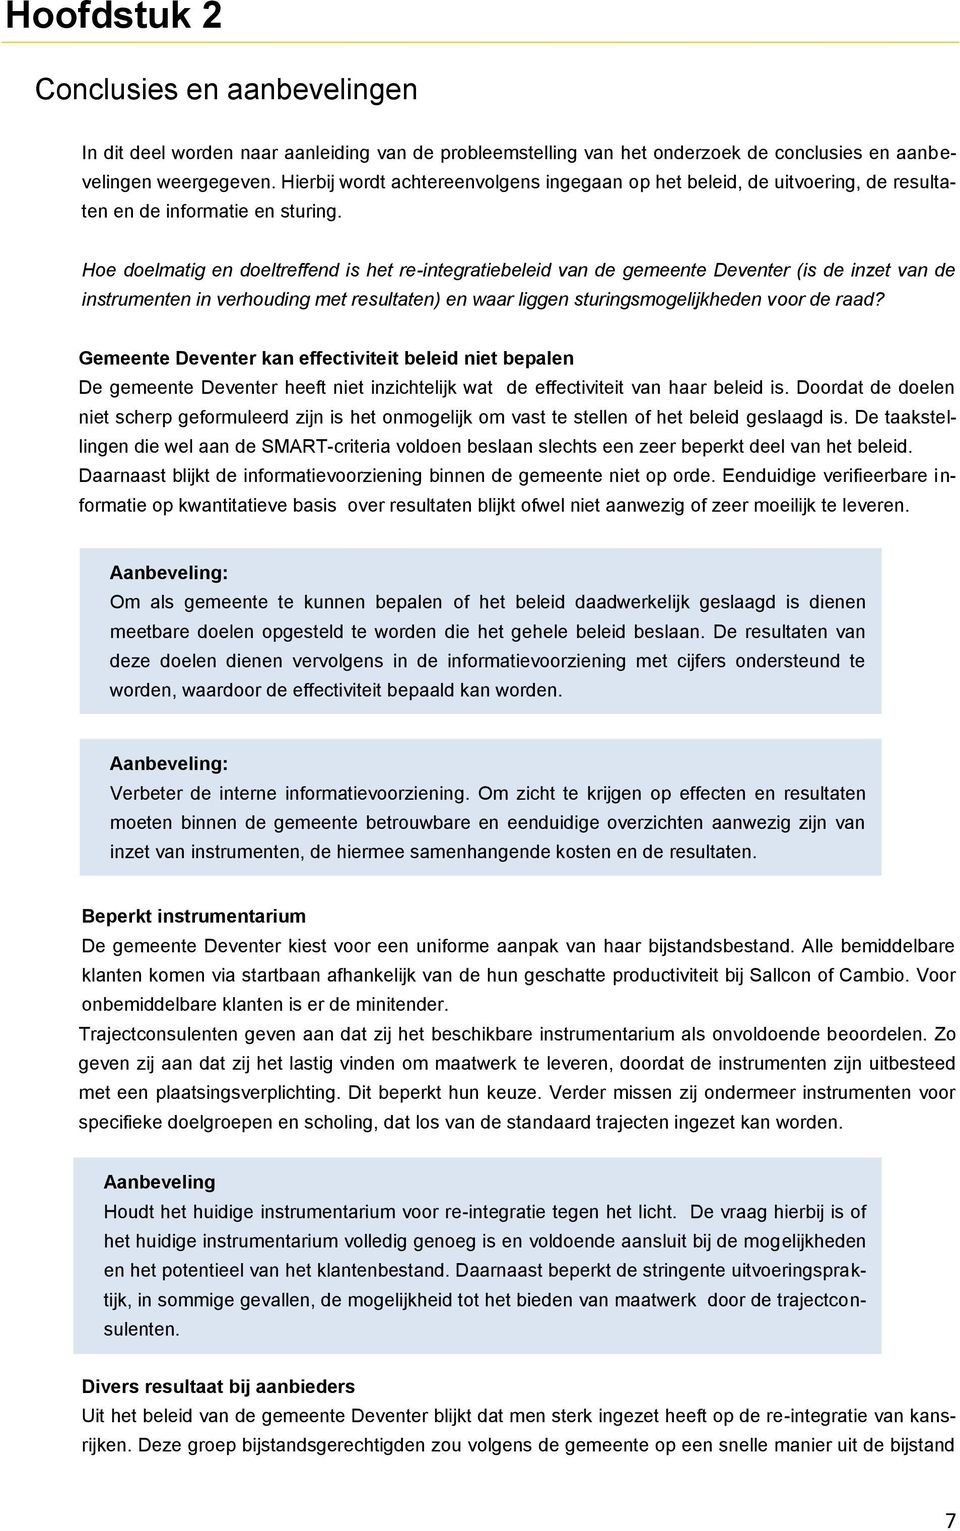 Hoe doelmatig en doeltreffend is het re-integratiebeleid van de gemeente Deventer (is de inzet van de instrumenten in verhouding met resultaten) en waar liggen sturingsmogelijkheden voor de raad?